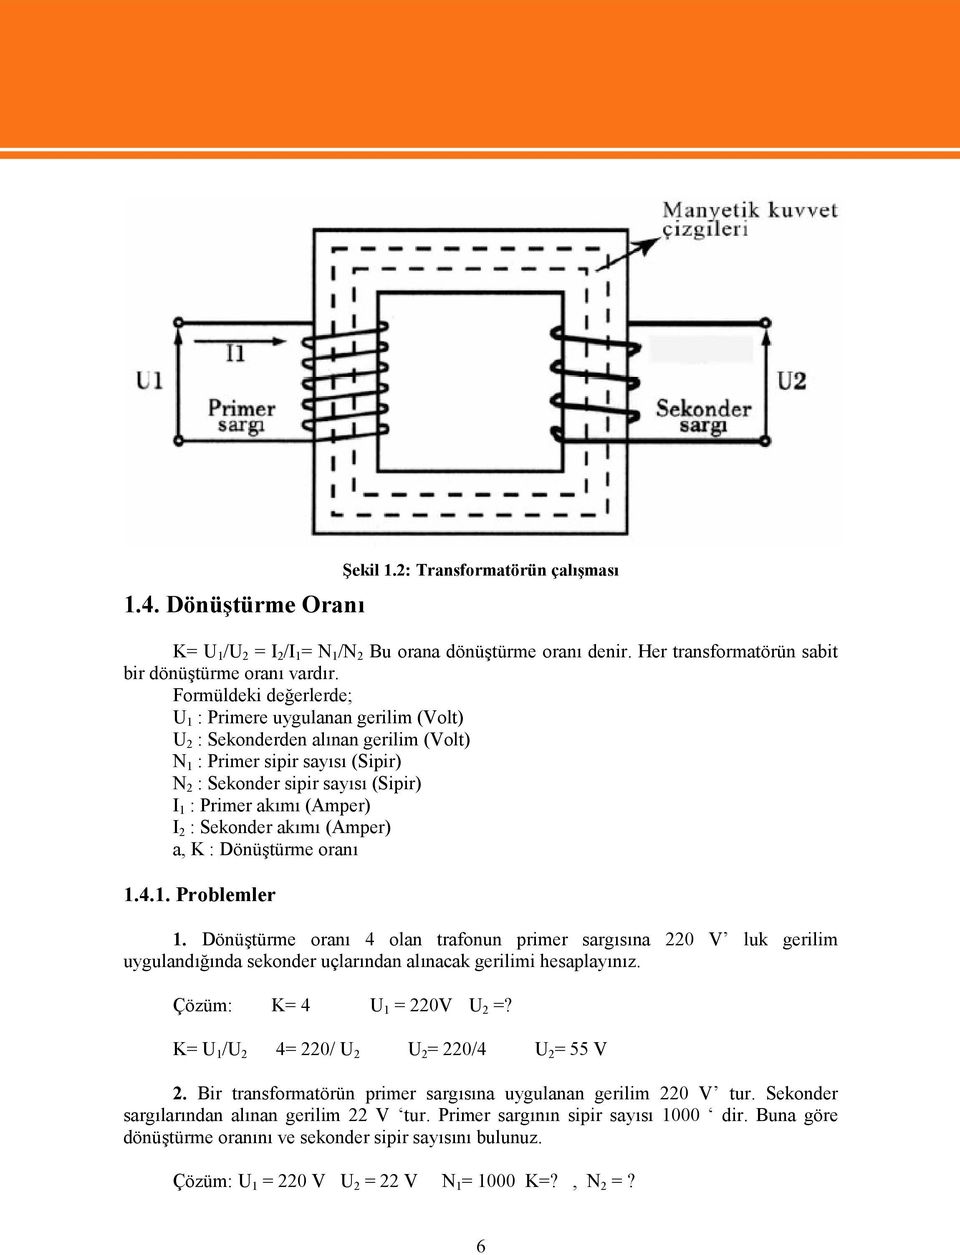 I 2 : Sekonder akımı (Amper) a, K : Dönüştürme oranı 1.4.1. Problemler 1.